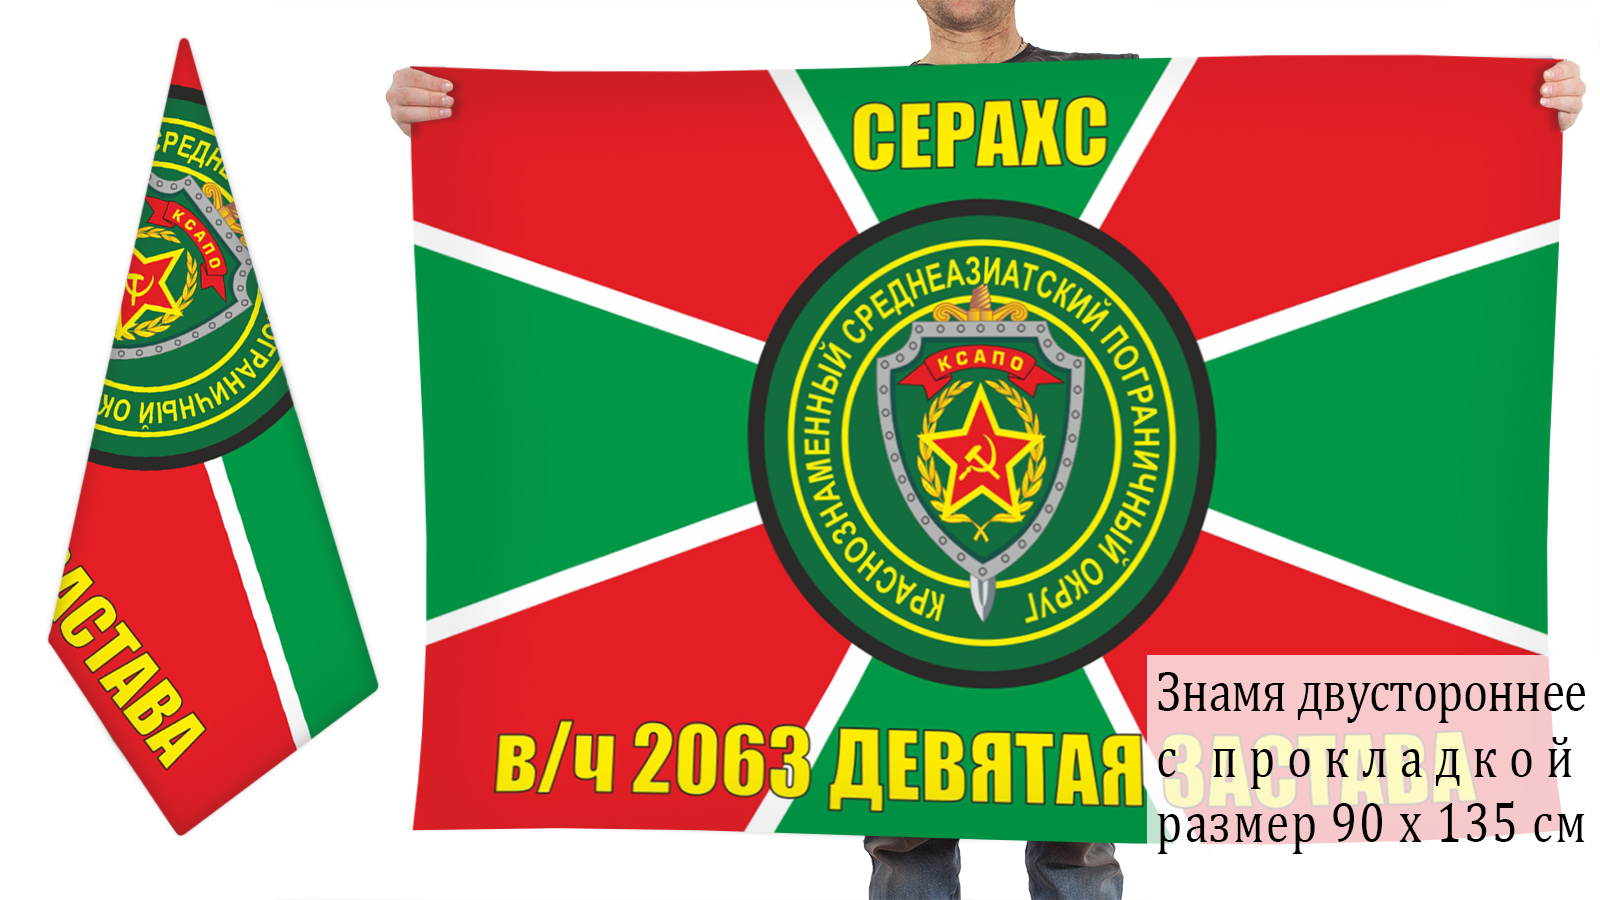 Большой флаг Девятой заставы Серахс в/ч 2063, КСАПО 